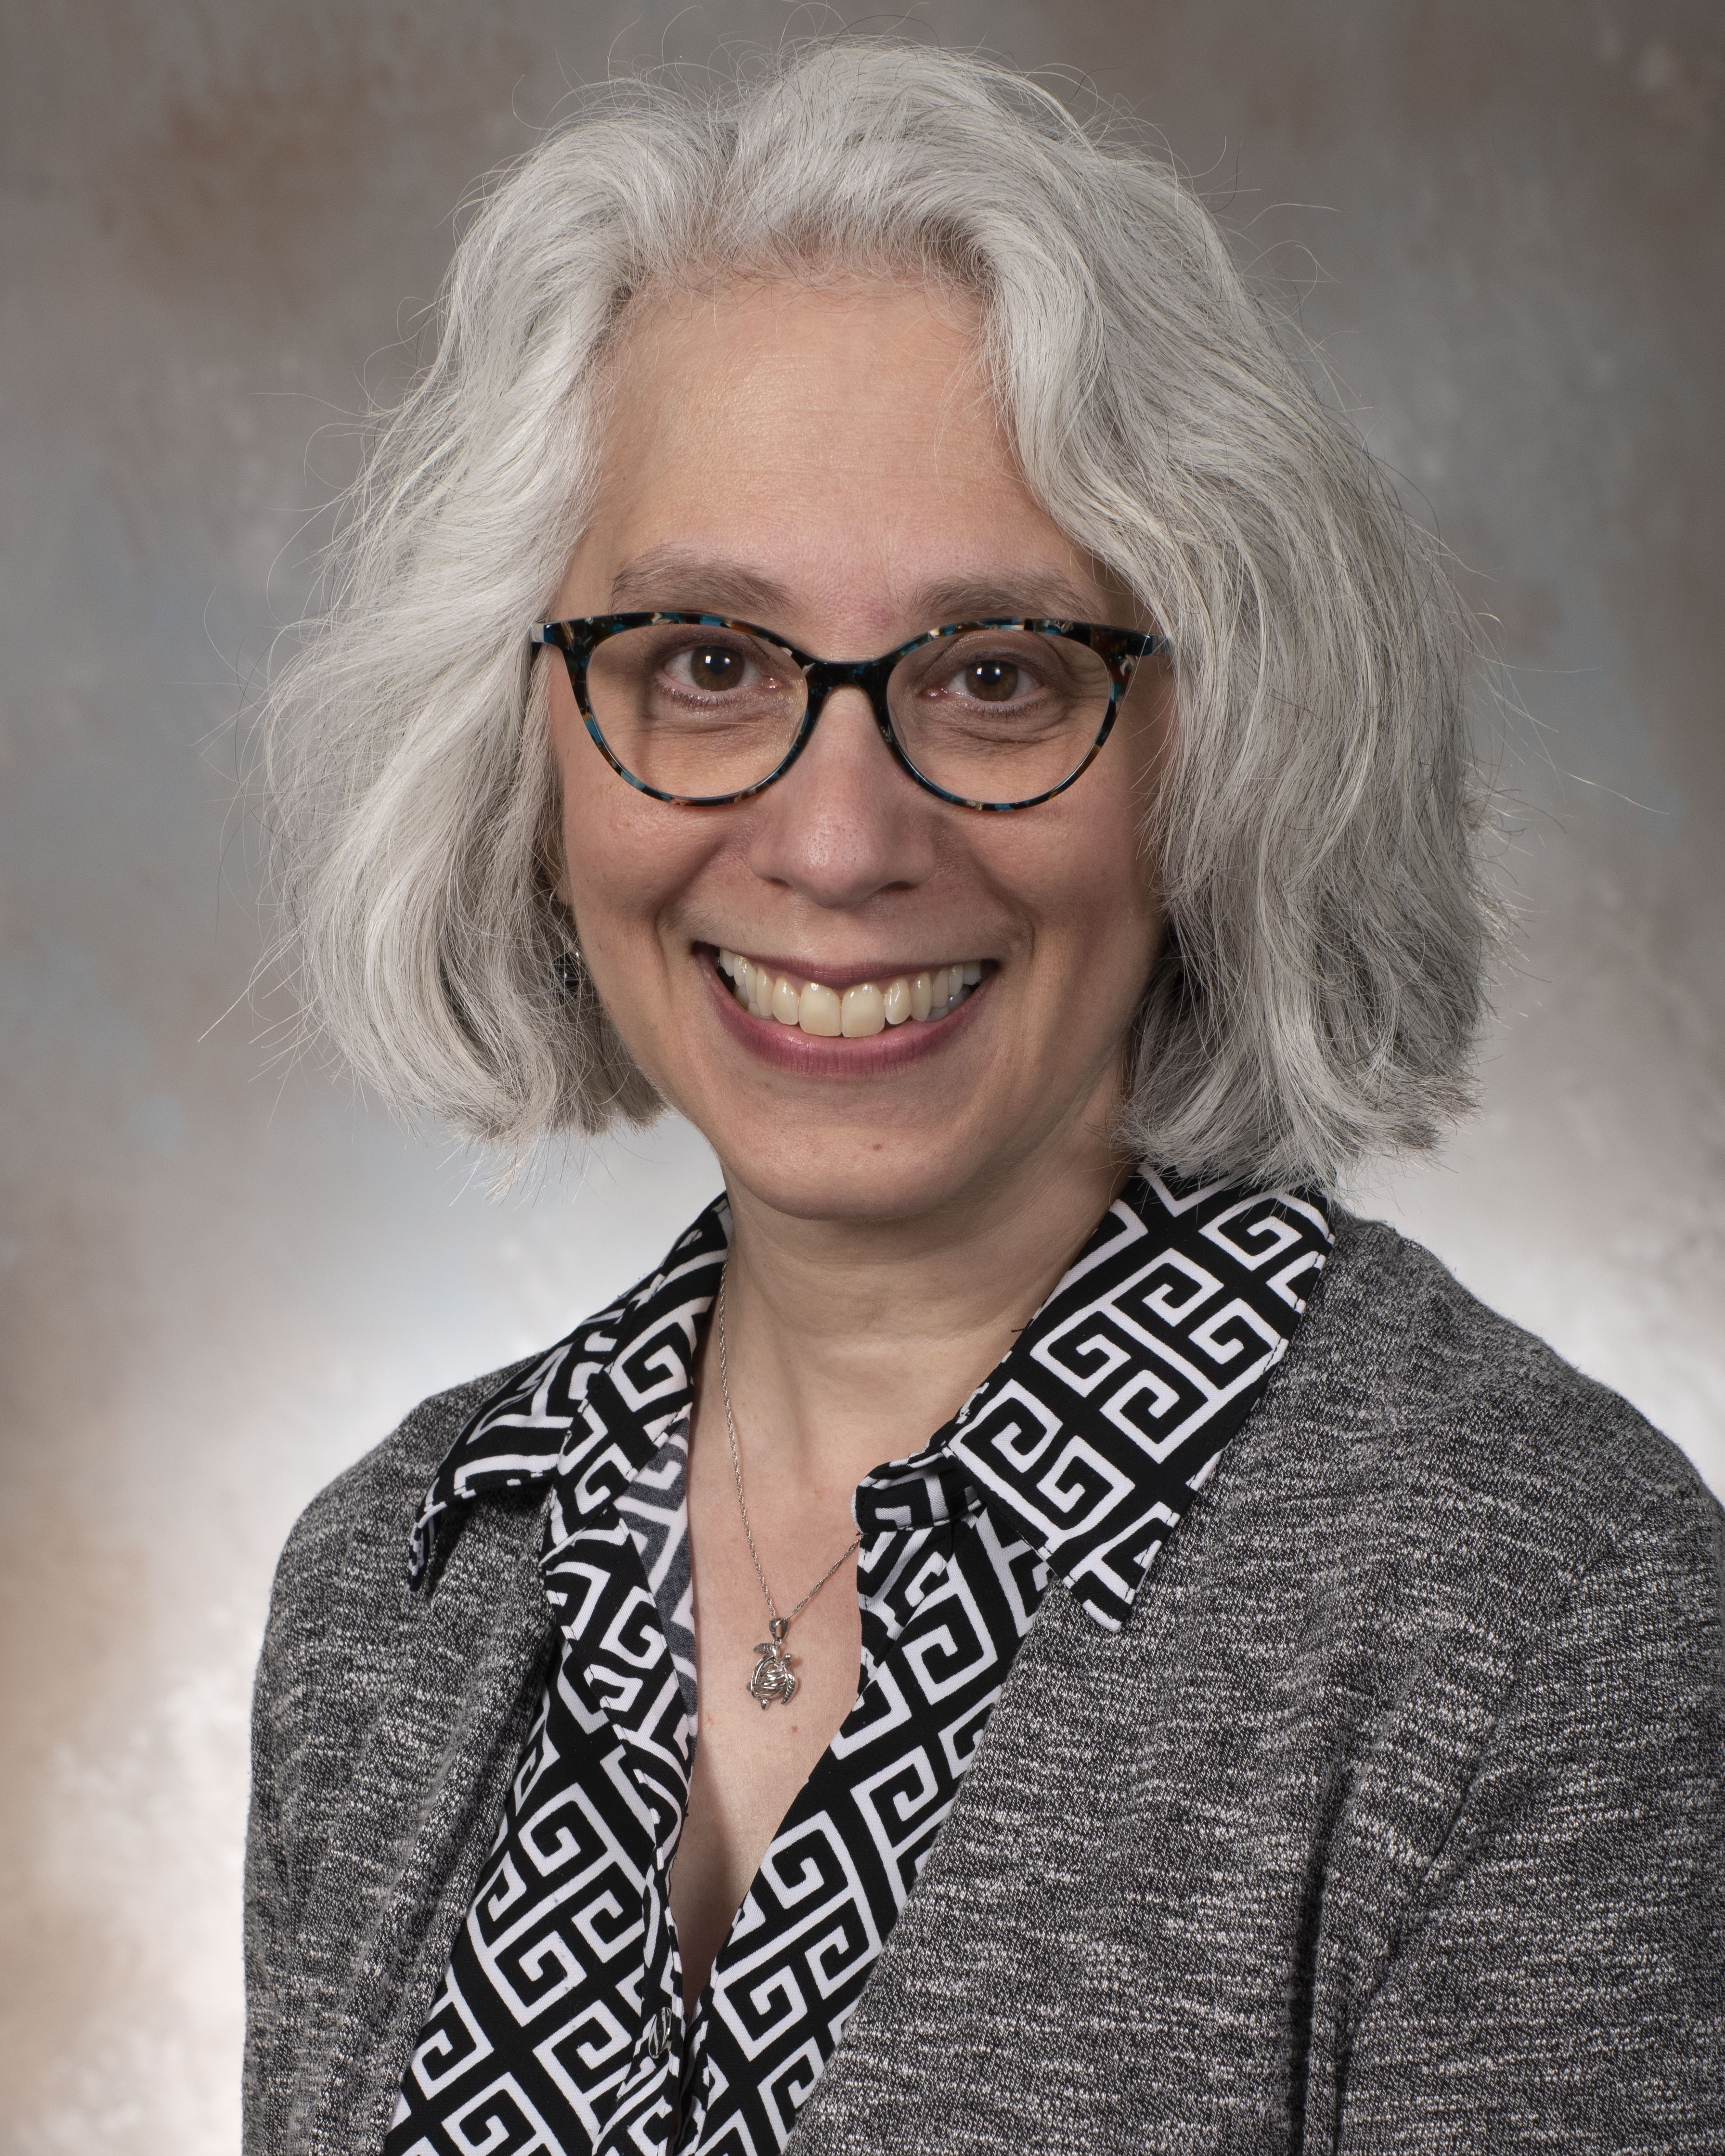 Marjorie Weinstock, Ph.D.